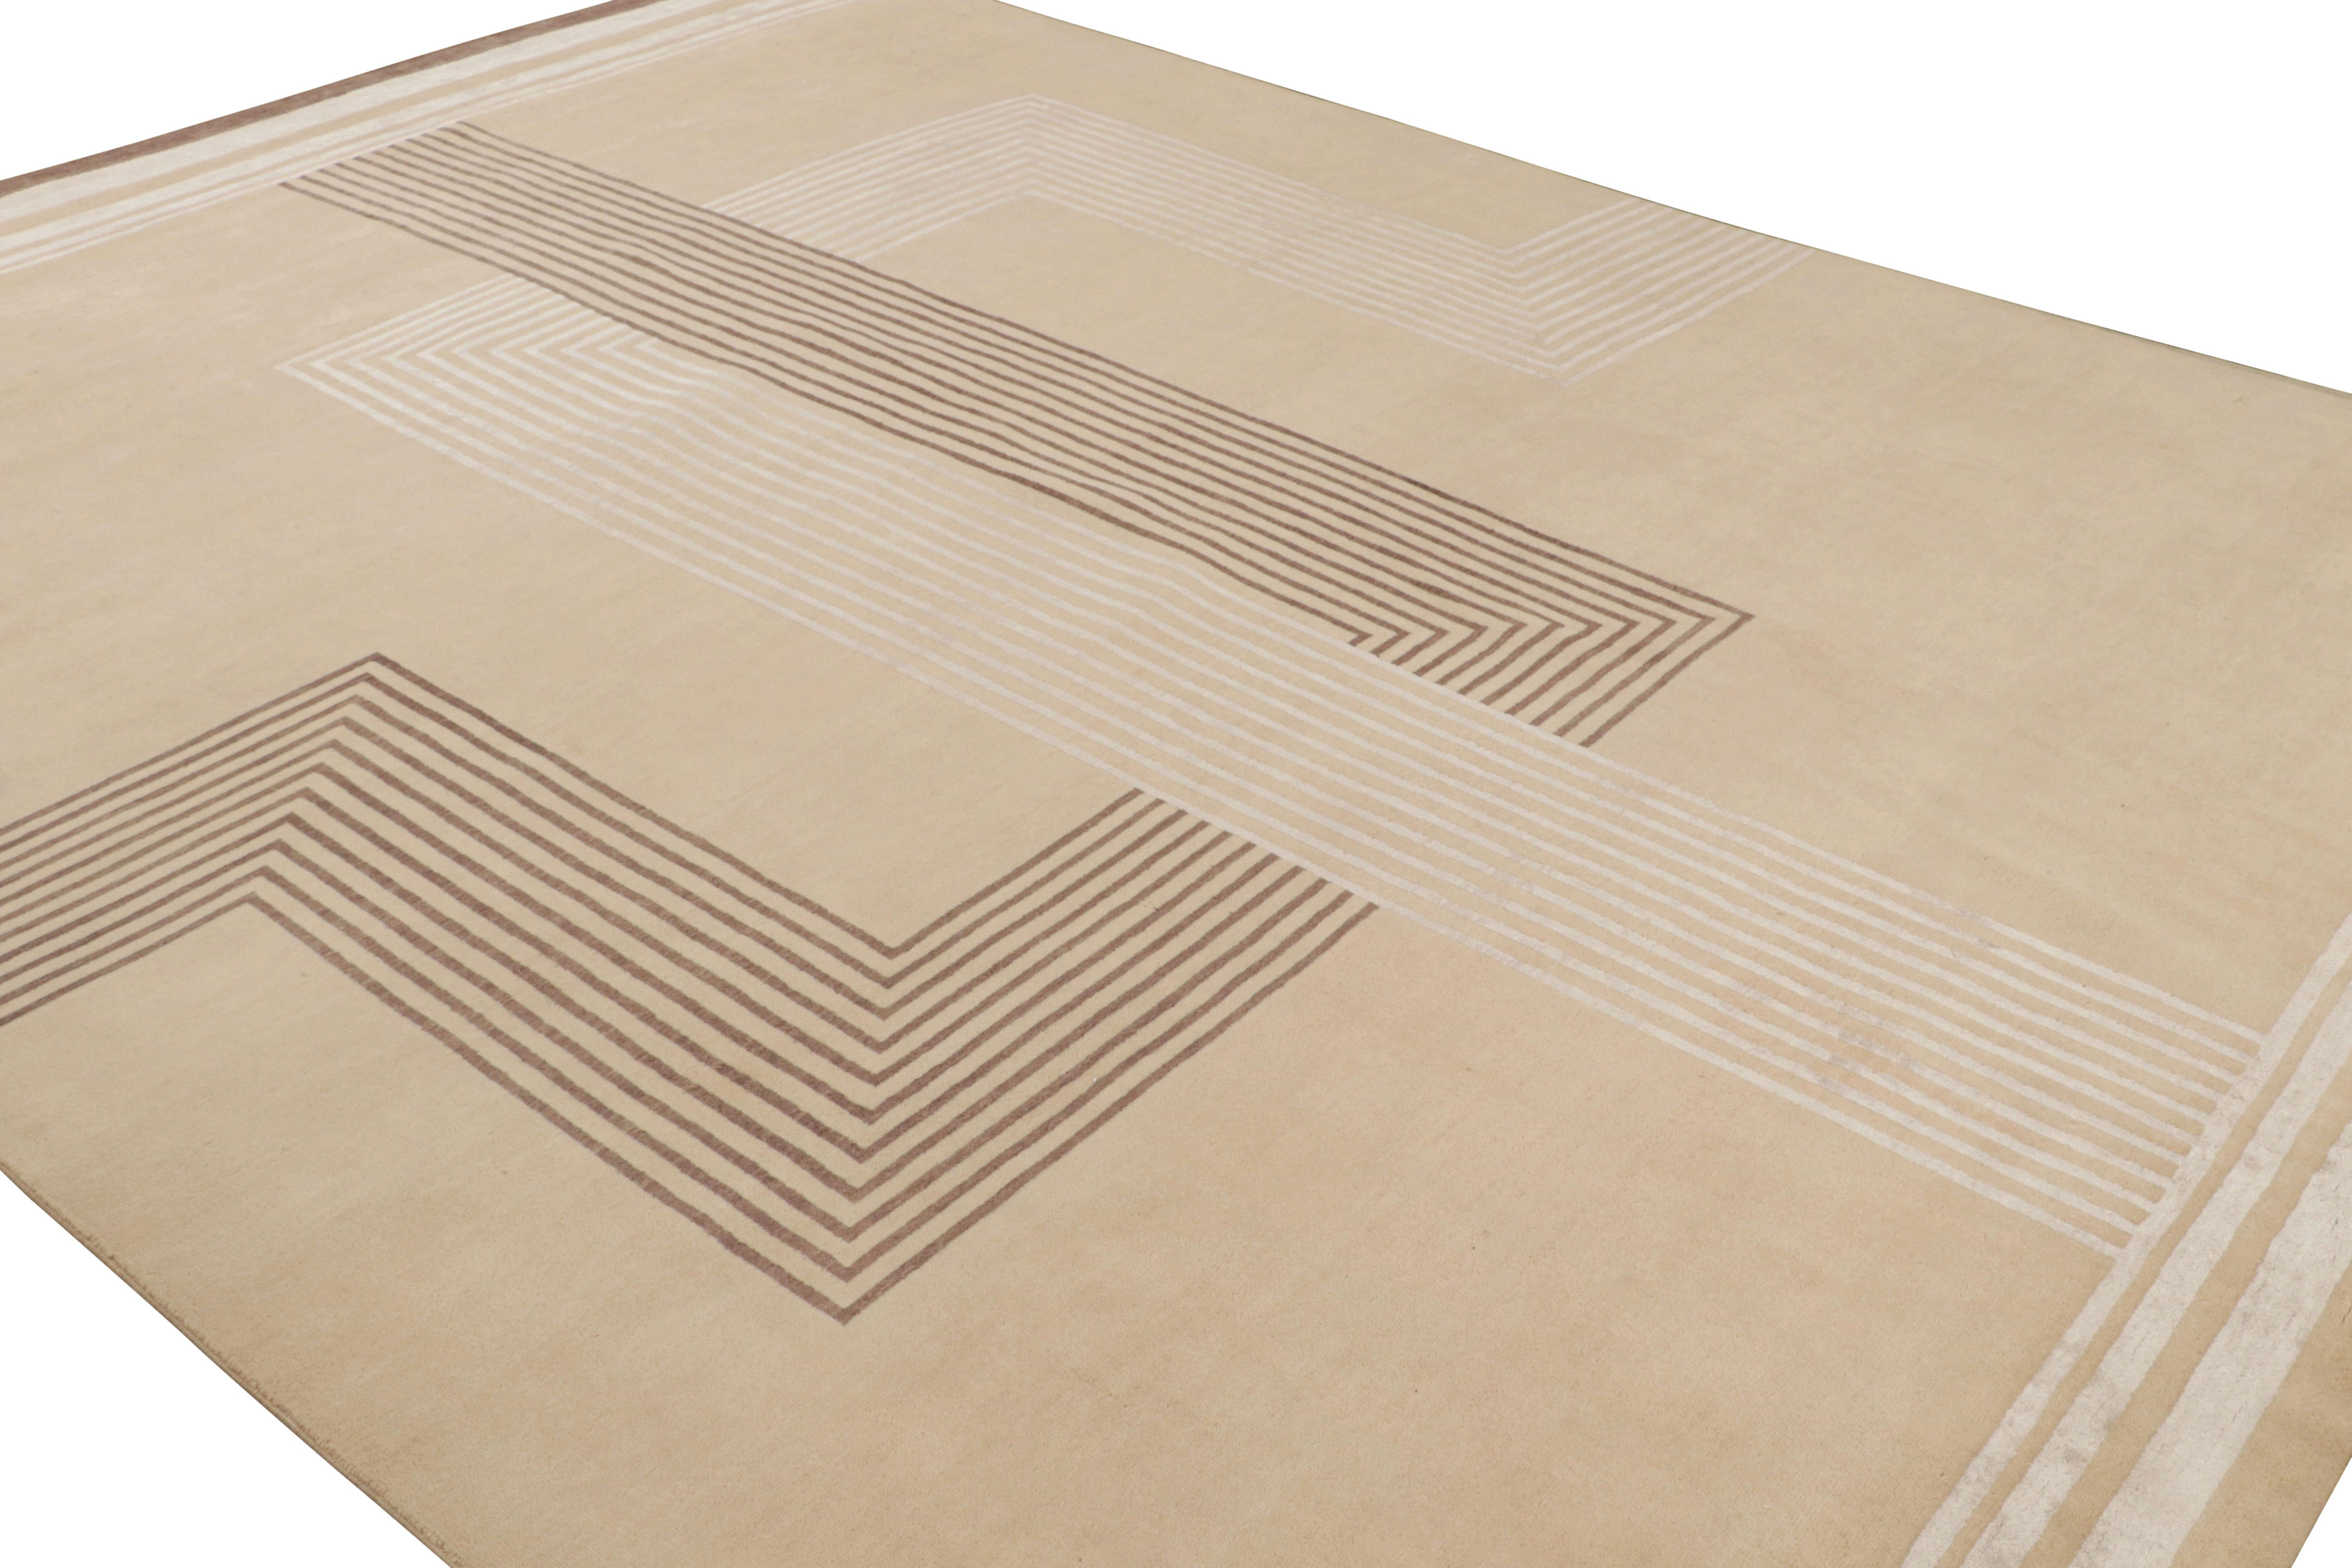 Noué à la main en laine et en soie, ce tapis moderne 10x14 de Rug & Kilim est un nouvel ajout à la ligne de tapis Art déco français.

Sur le Design : 

Pour ce tapis en particulier, le beige souligne les motifs géométriques rectilignes cubistes et